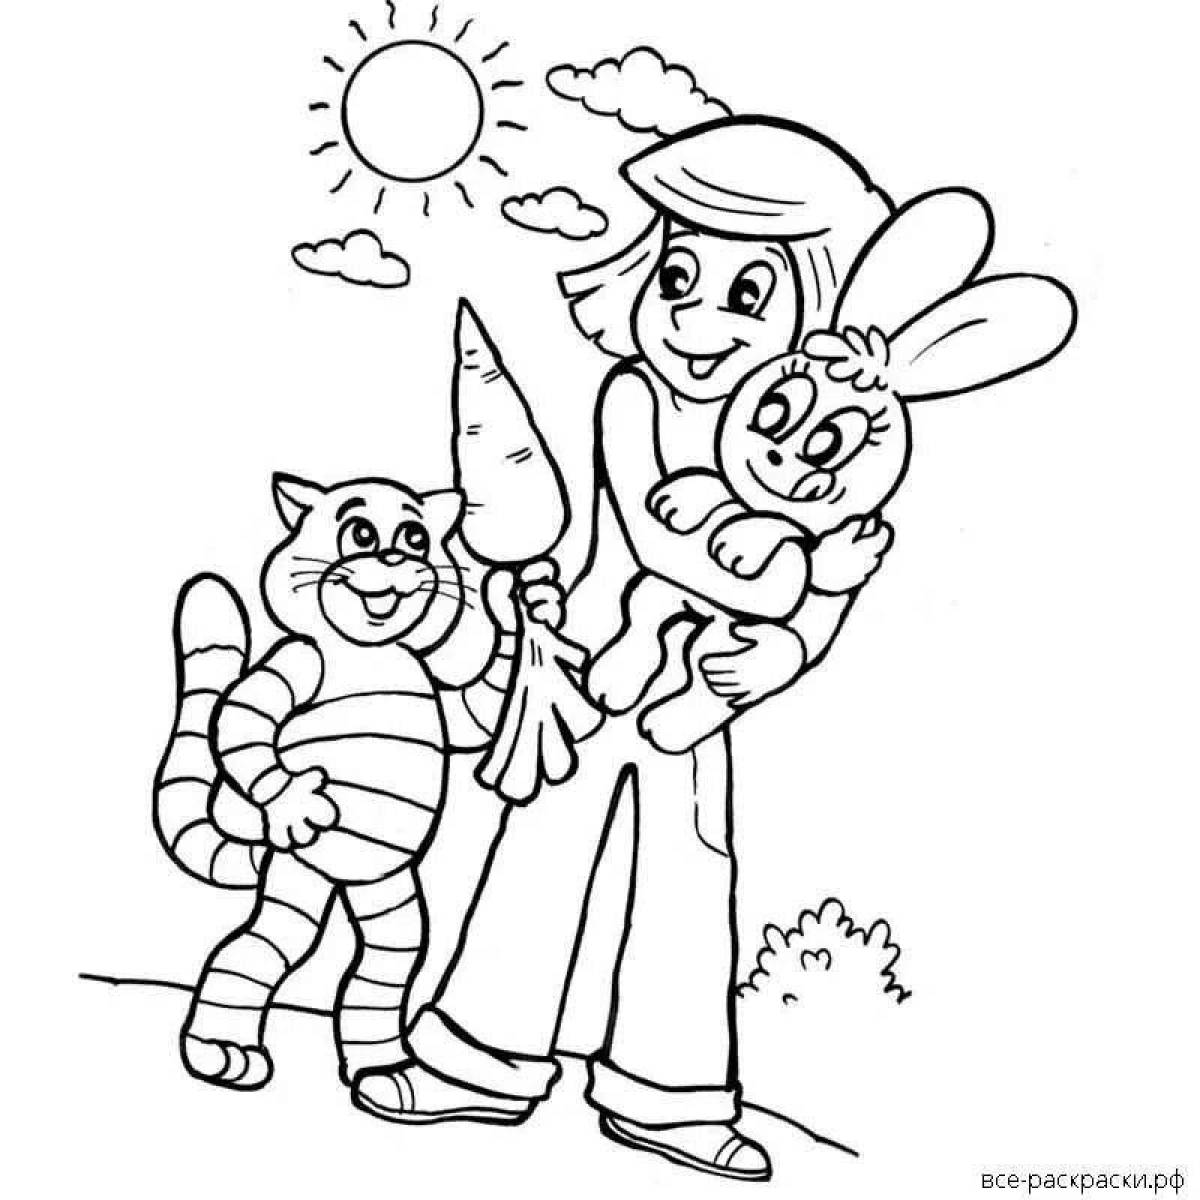 Рисунок на тему дядя федор пес и кот